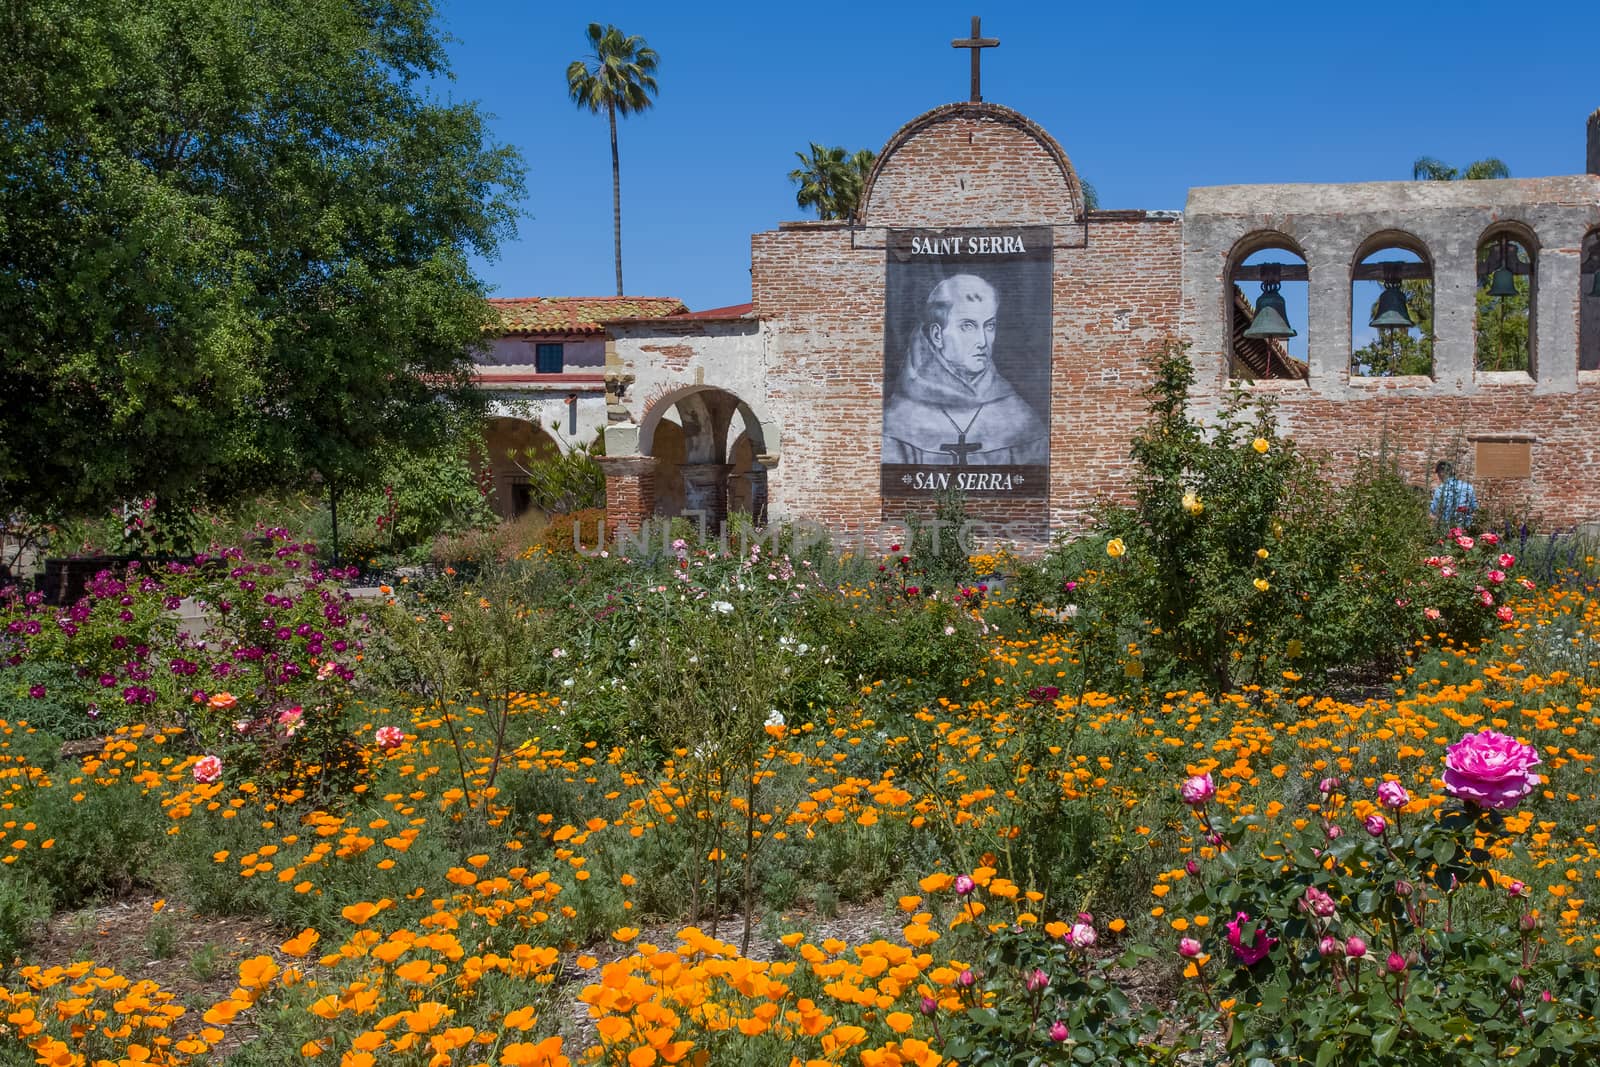 SAN JUAN CAPISTRANO, CA/USA - APRIL 2, 2016: Exterior facade and outdoor gardens at Mission San Juan Capistrano. Mission San Juan Capistrano was a Spanish mission in in present-day San Juan Capistrano, California.